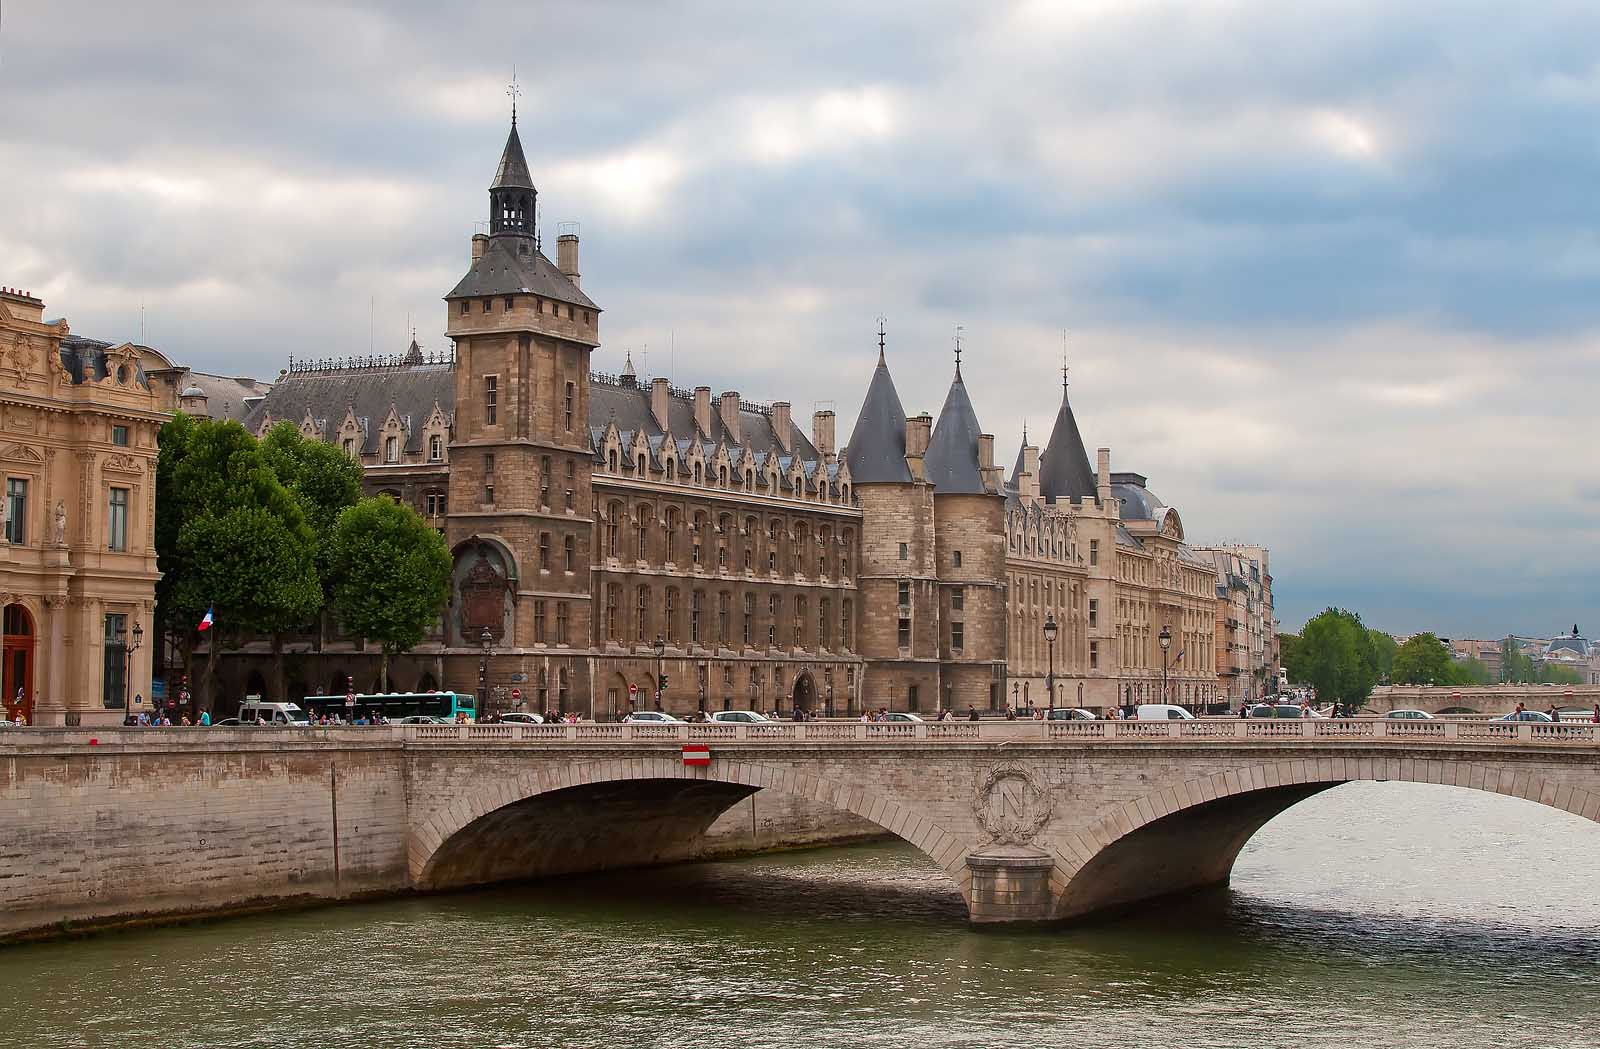 Castle Conciergerie across the river Seine in Paris